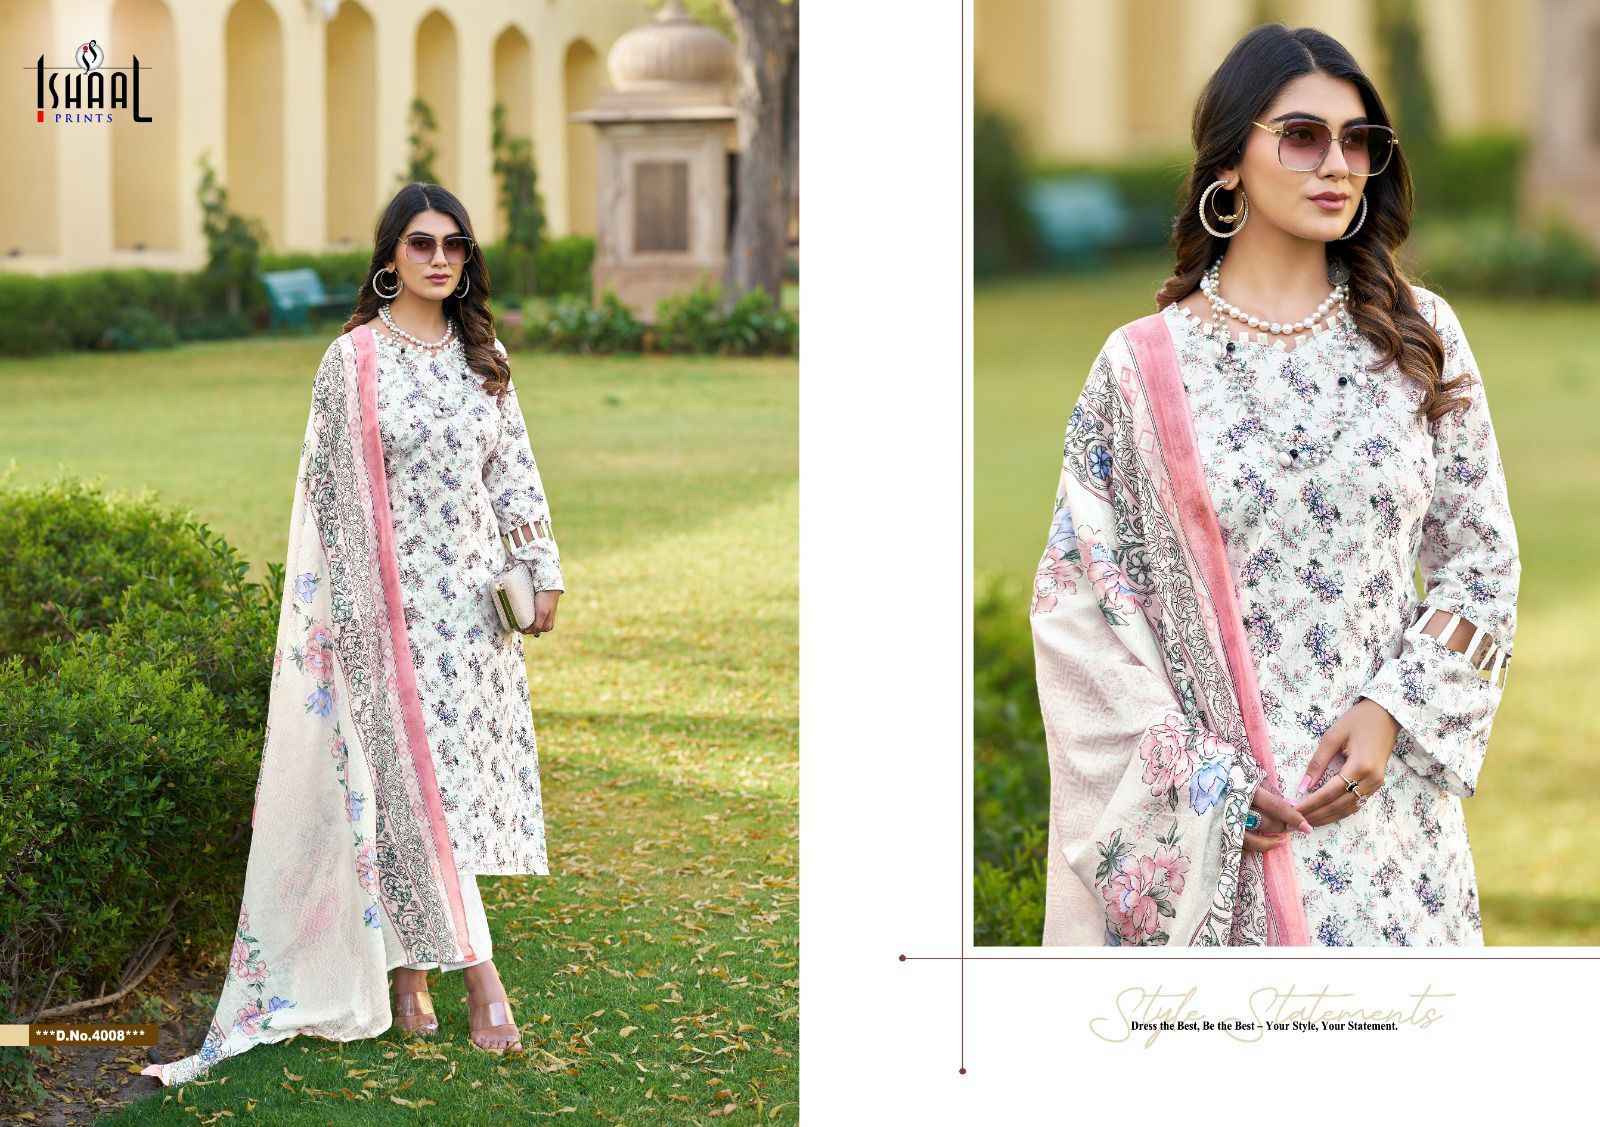 Ishaal Prints Kesariya Vol 4 Lawn Dress Material 8 pcs Catalogue